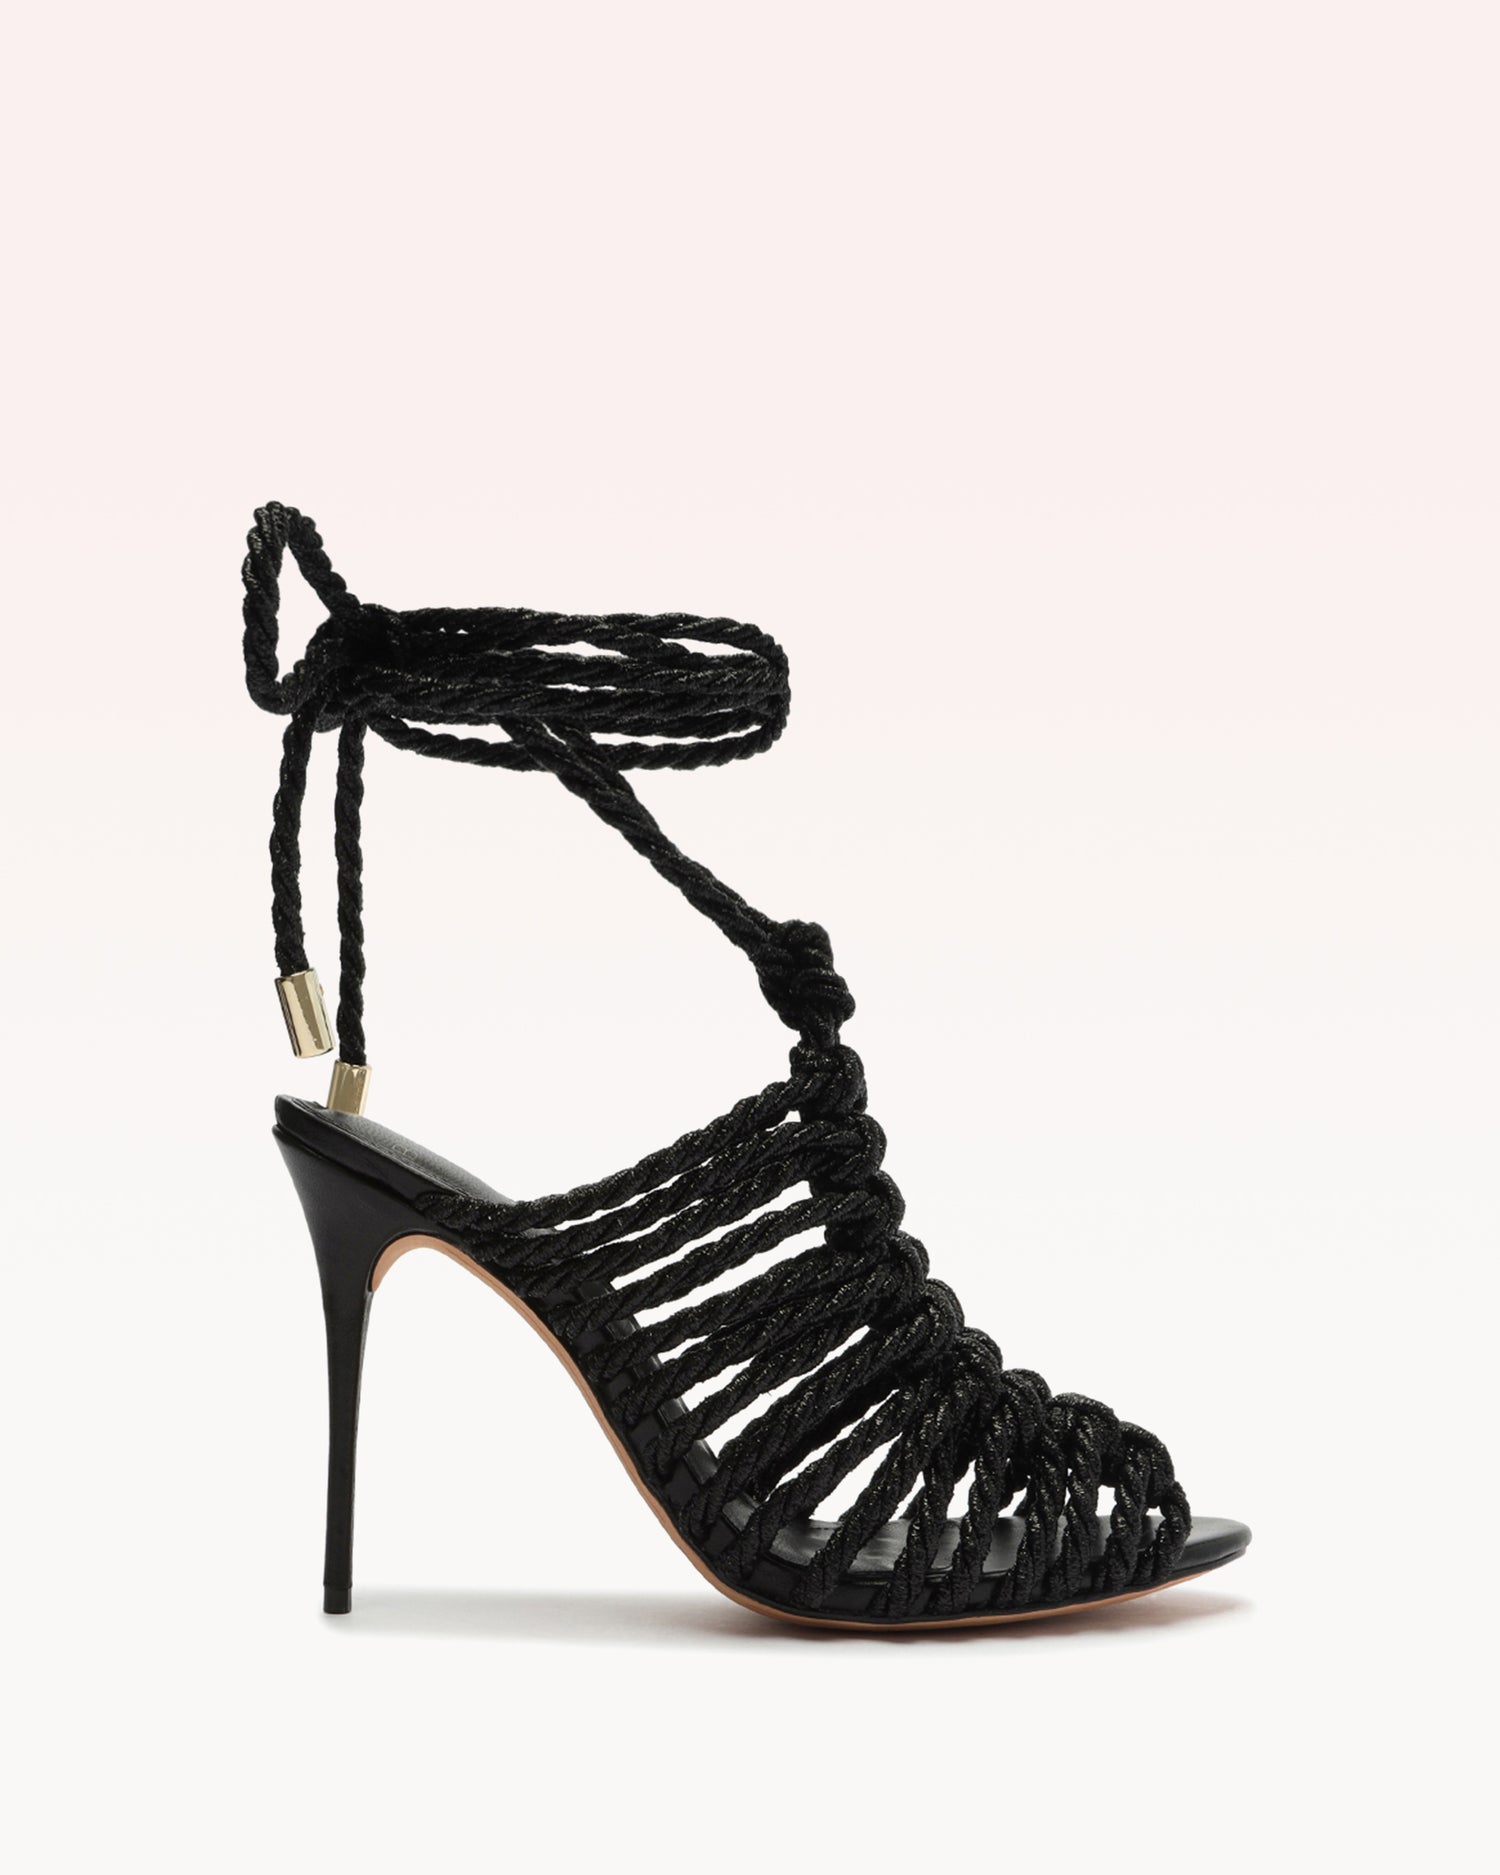 Barbara Lurex Black Sandals S/23 35 Black Lurex